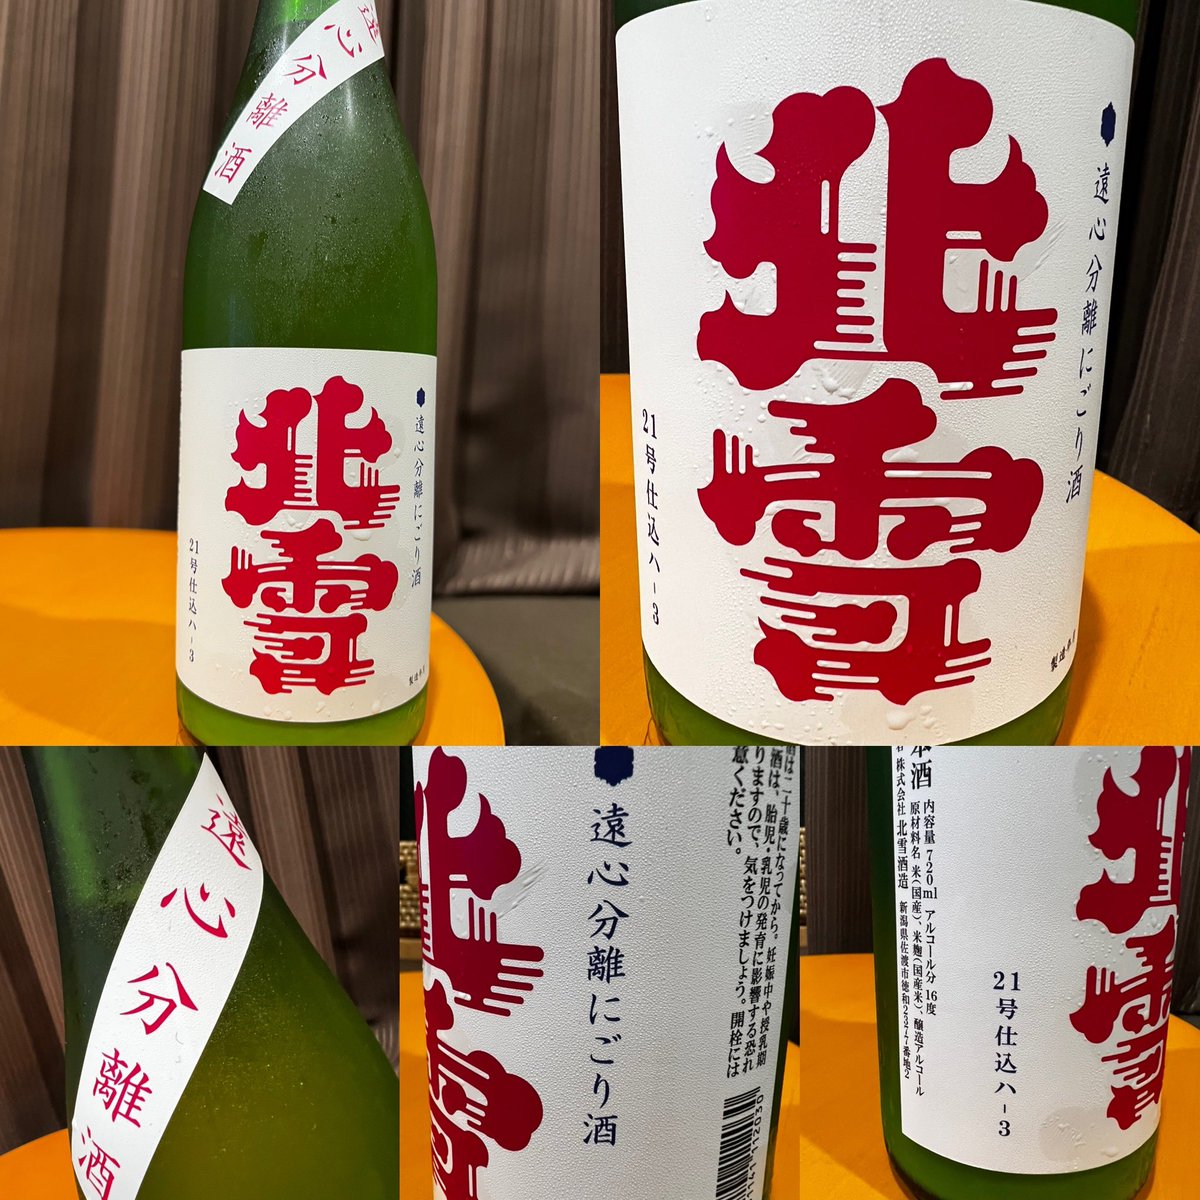 test ツイッターメディア - 佐渡にある北雪酒造さんの、北雪　遠心分離にごり酒を頂きました。良い香りと口当たりサラリと柔らかくて辛口！絶妙なバランスが美味しいお酒でした。😋👍
#SAKE #北雪酒造　#北雪で乾杯　#日本酒　#新潟のお酒 https://t.co/wh8UXy46I1